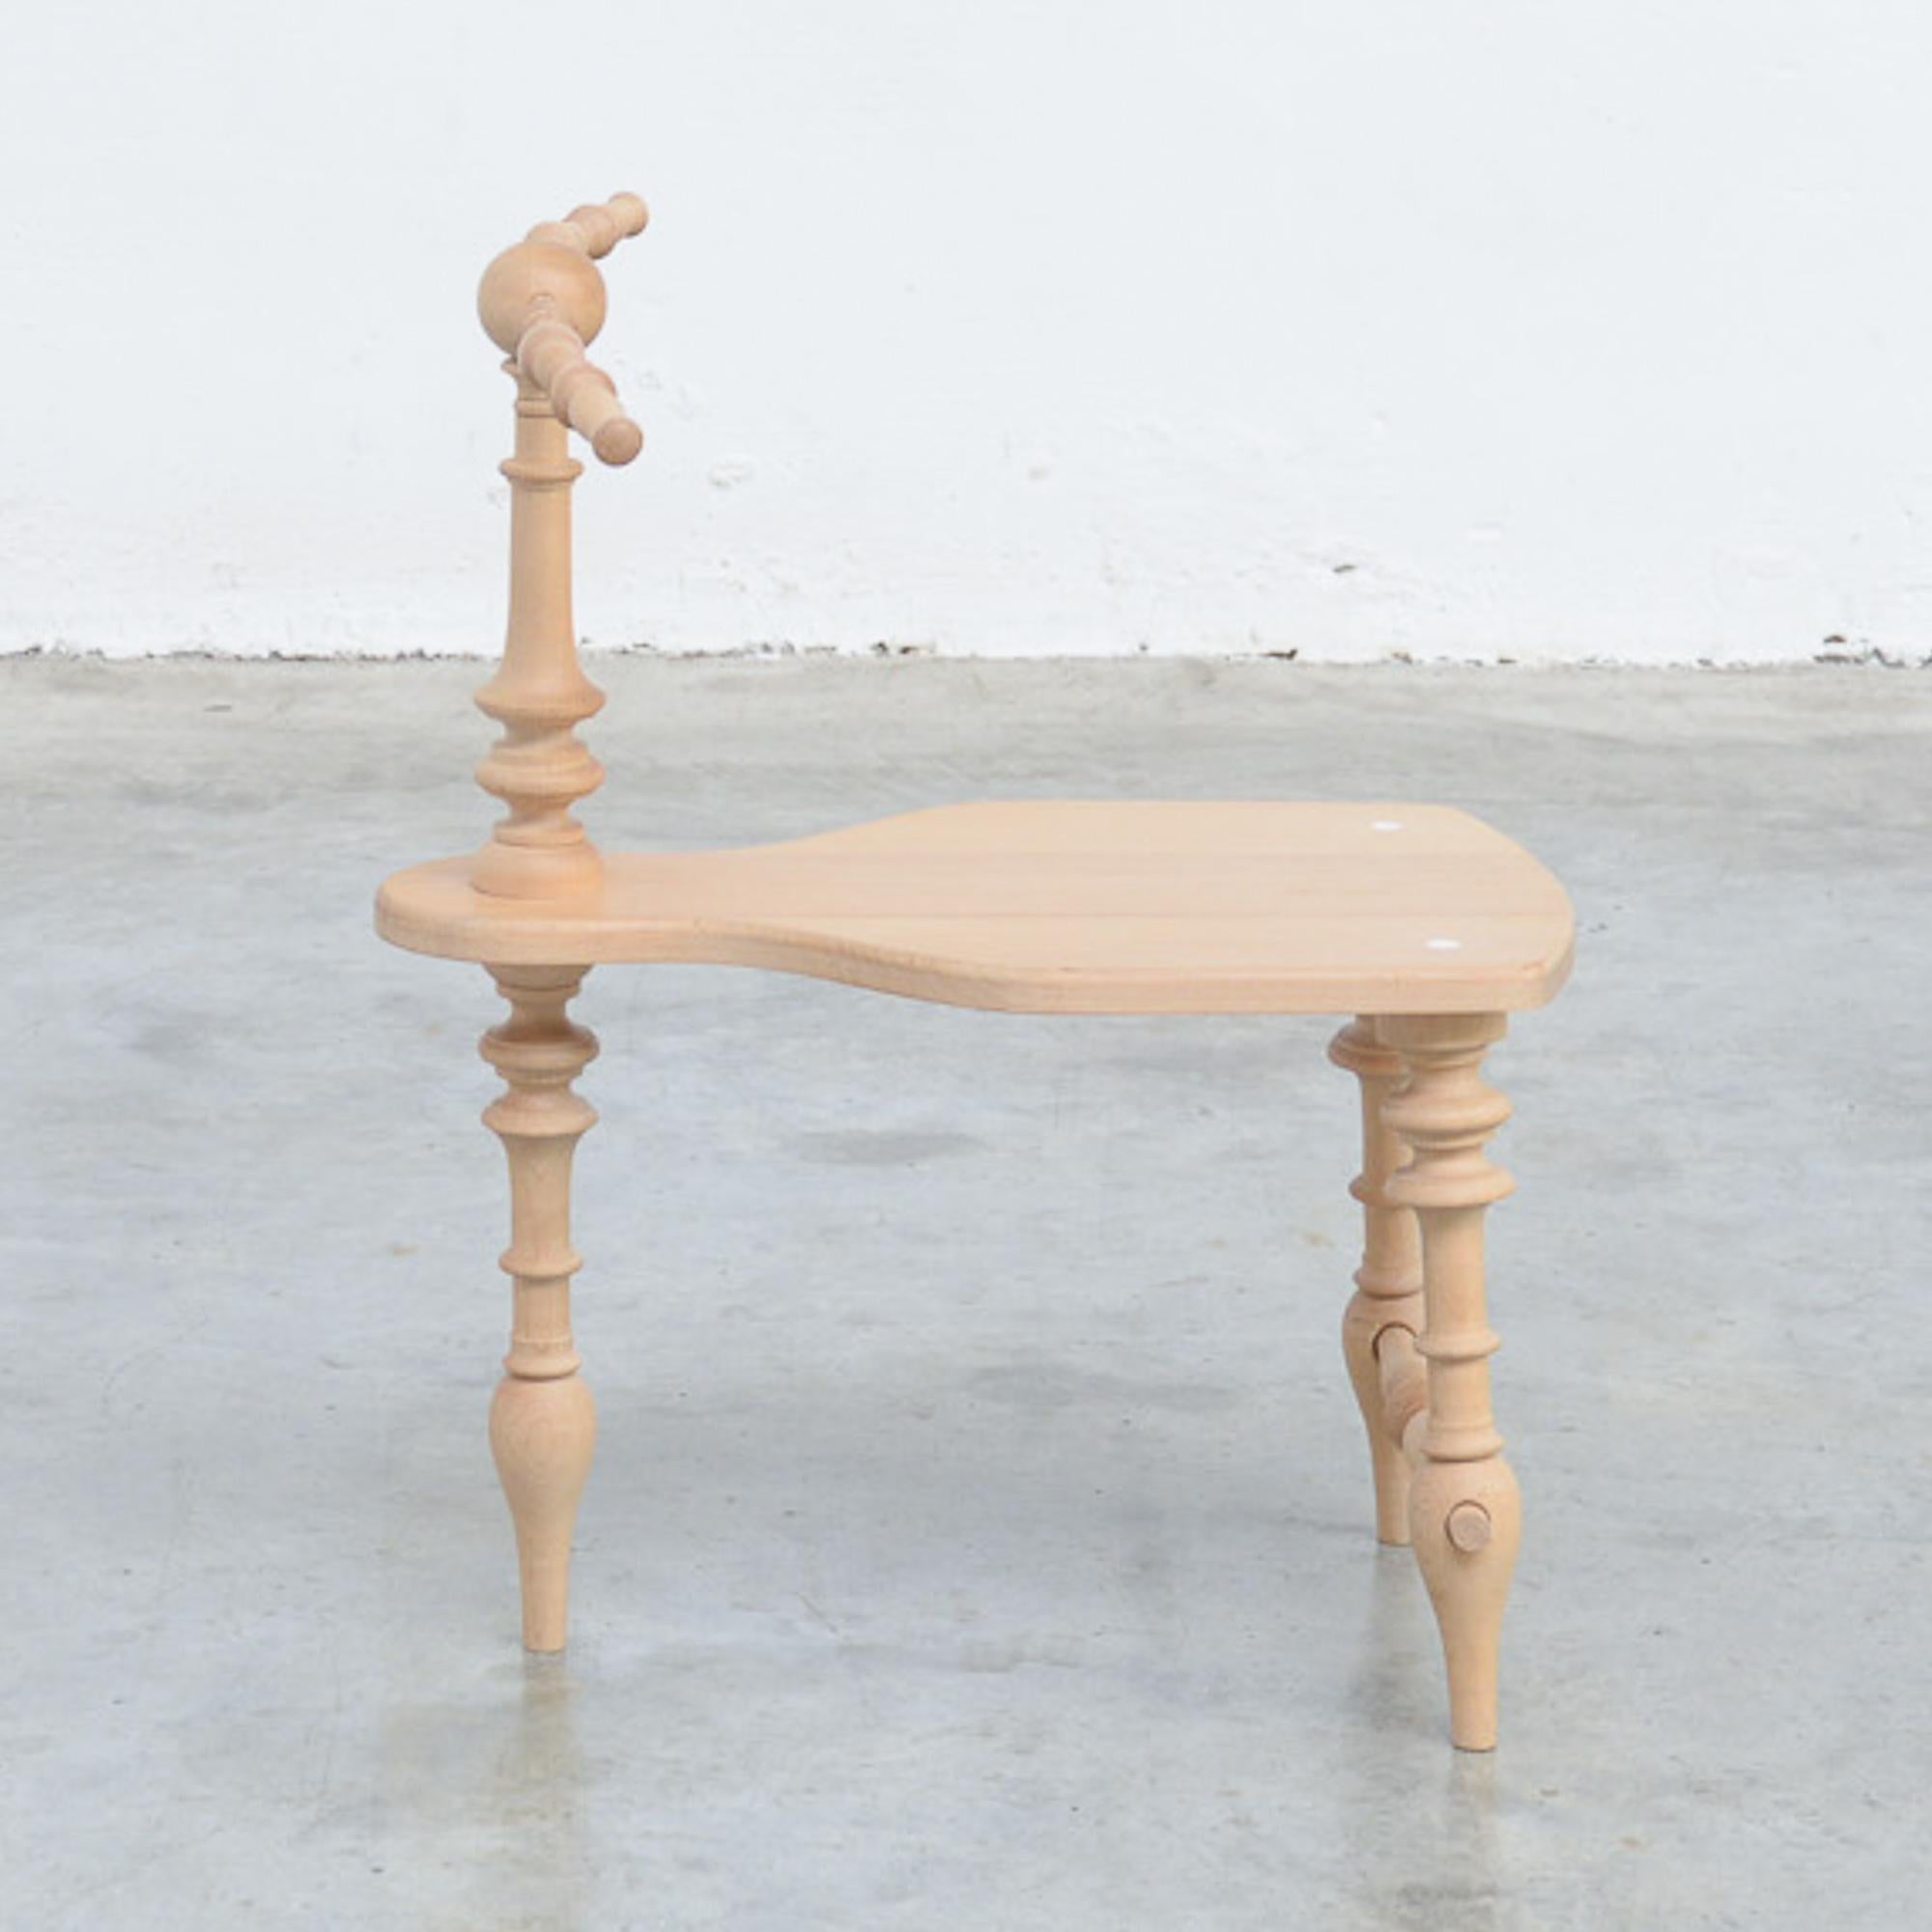 Cette table d'appoint est fabriquée en bois de chêne. C'est une pièce fragile dont il faut prendre soin.
Il s'agit d'une pièce unique, signée par l'artiste.
       